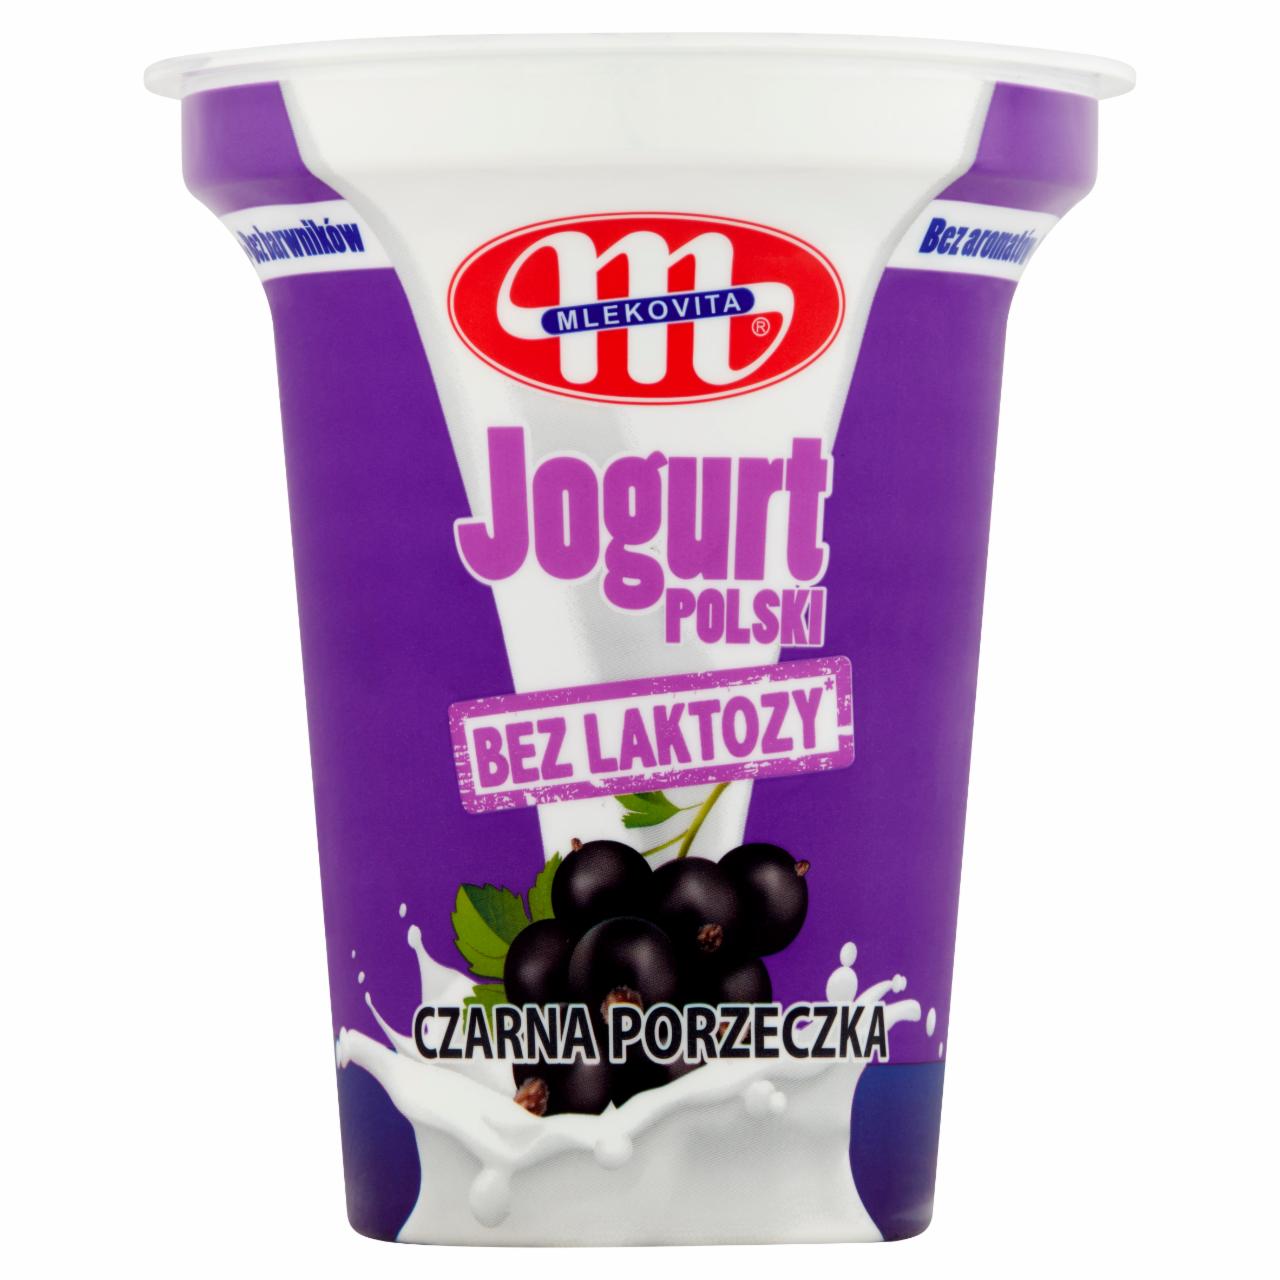 Zdjęcia - Mlekovita Jogurt Polski bez laktozy czarna porzeczka 310 g